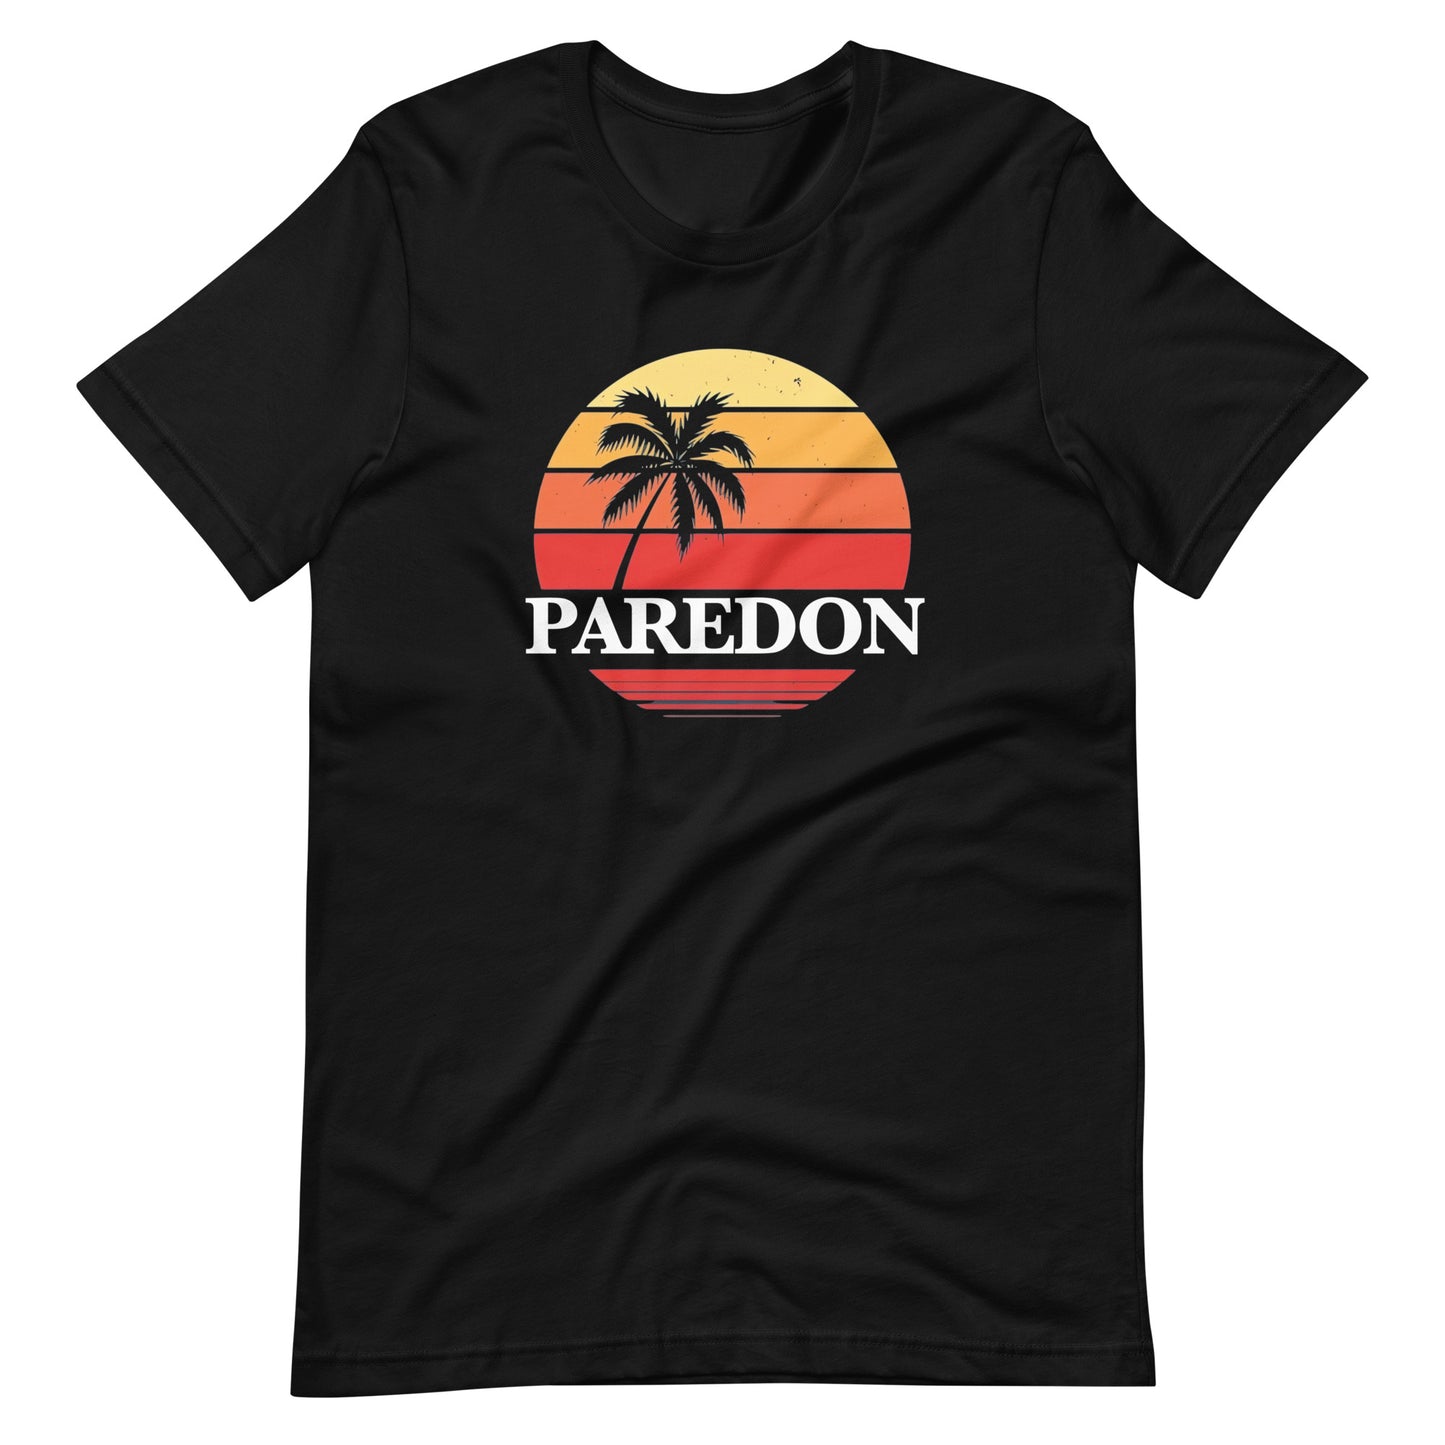 Consigue el mejor merch de El Paredón: camisetas, sudaderas y más con estilo único. Compra ahora: Playera de Paredón Sunset